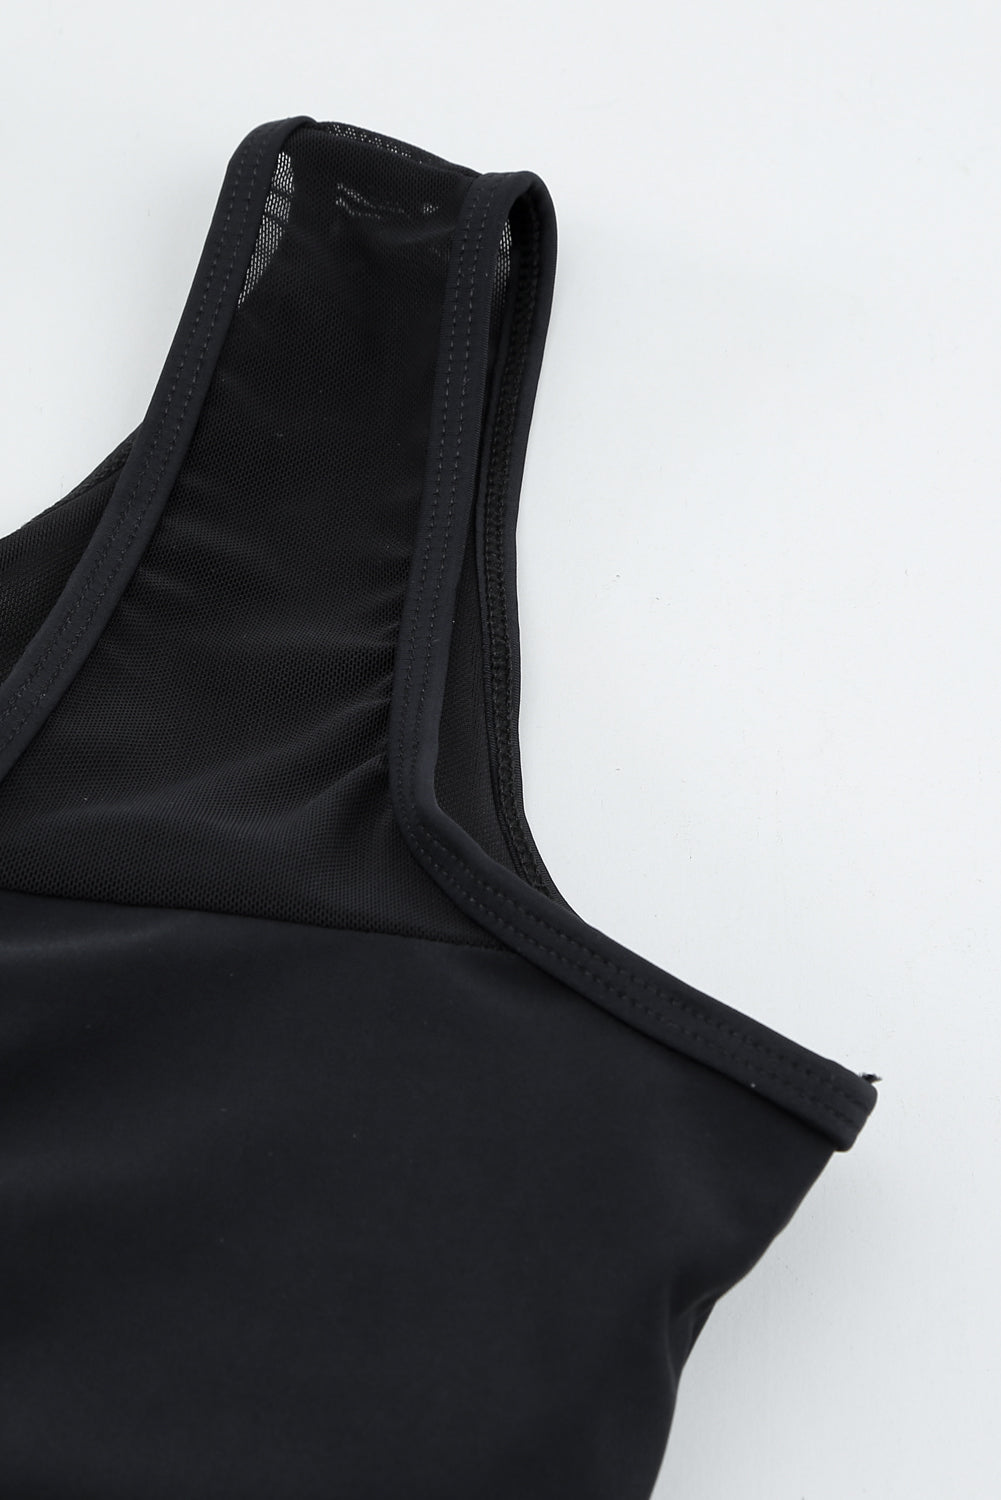 Schwarzer, einteiliger Badeanzug aus Netzstoff mit ausgehöhltem Rücken und Trägern